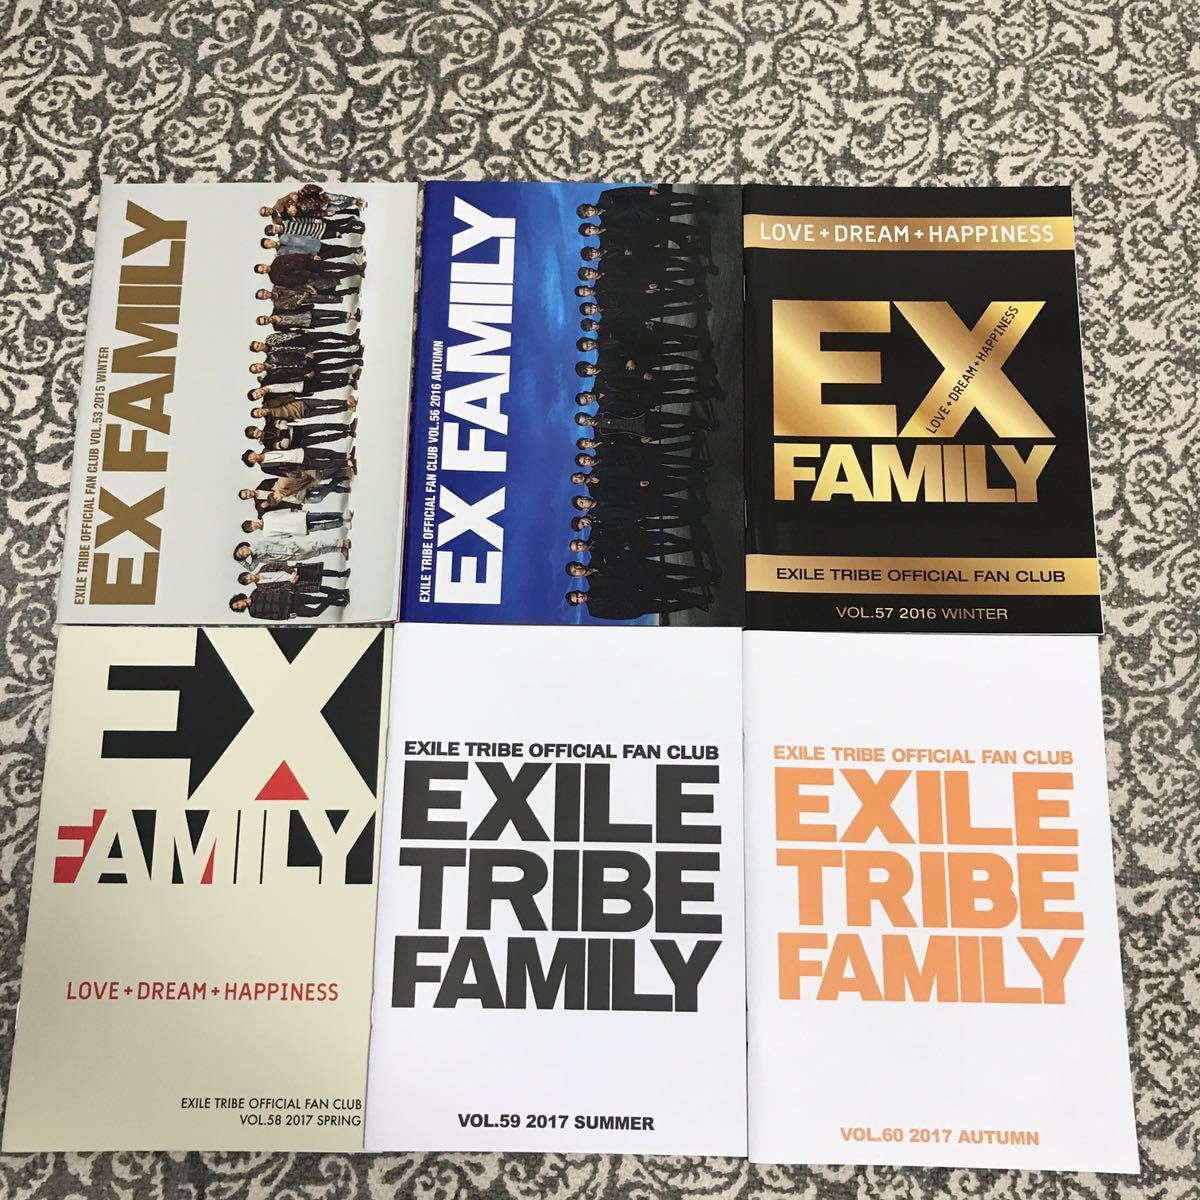 Ex Family Exile Vol 53 56 57 58 59 60 セカンド ファンクラブ会報 三代目jsb 計6冊セット 最大52 オフ ファンクラブ会報